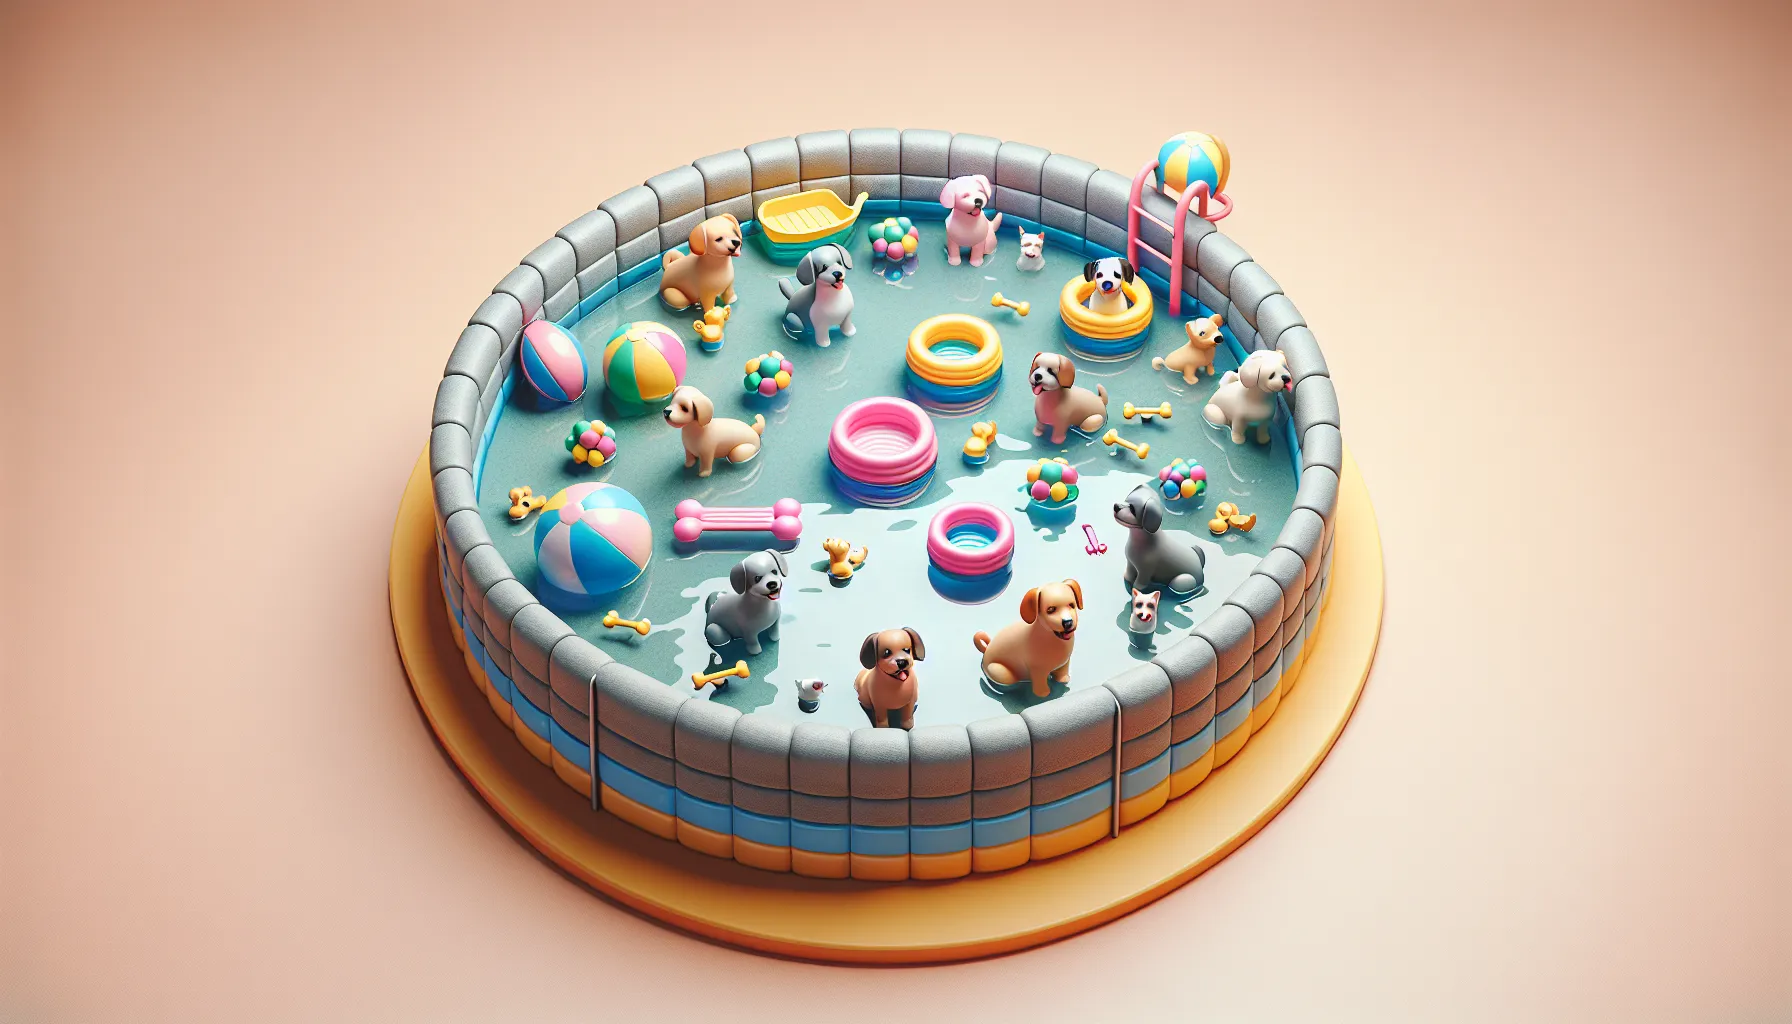 Imagen de una piscina para perros con agua limpia y juguetes flotando, lista para que las mascotas disfruten y se refresquen.